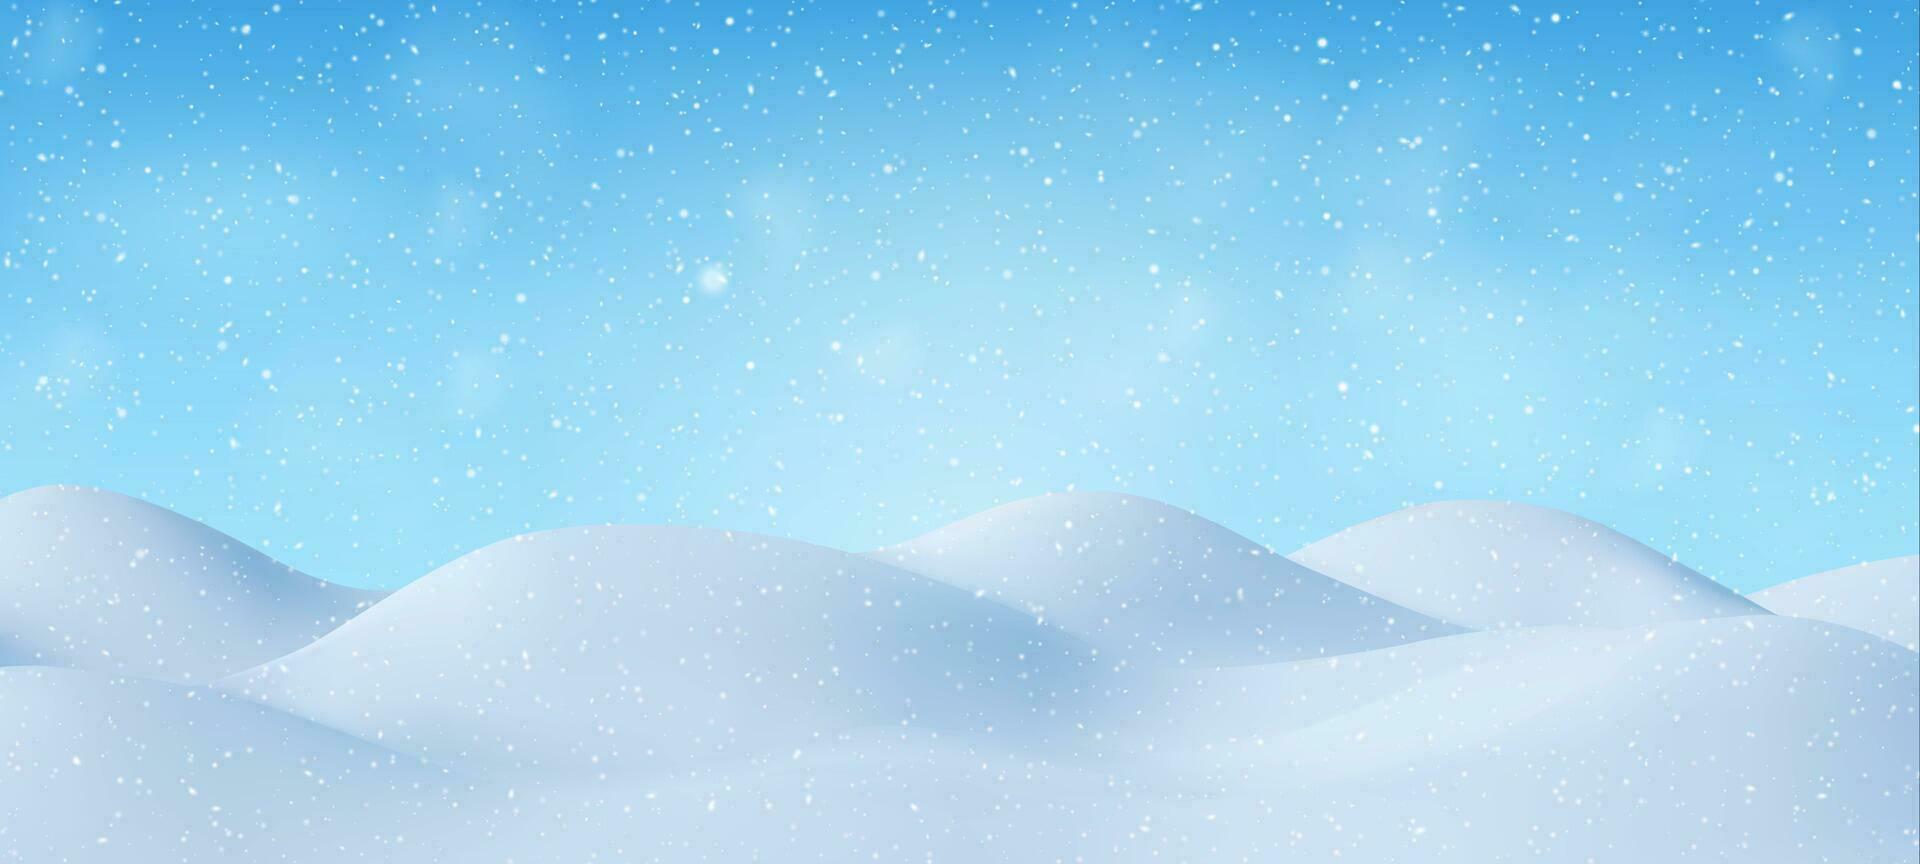 3d Naturel hiver Noël et Nouveau année Contexte avec bleu ciel, chute de neige, flocons de neige, congères. hiver paysage avec chute Noël brillant magnifique neige. vecteur illustration